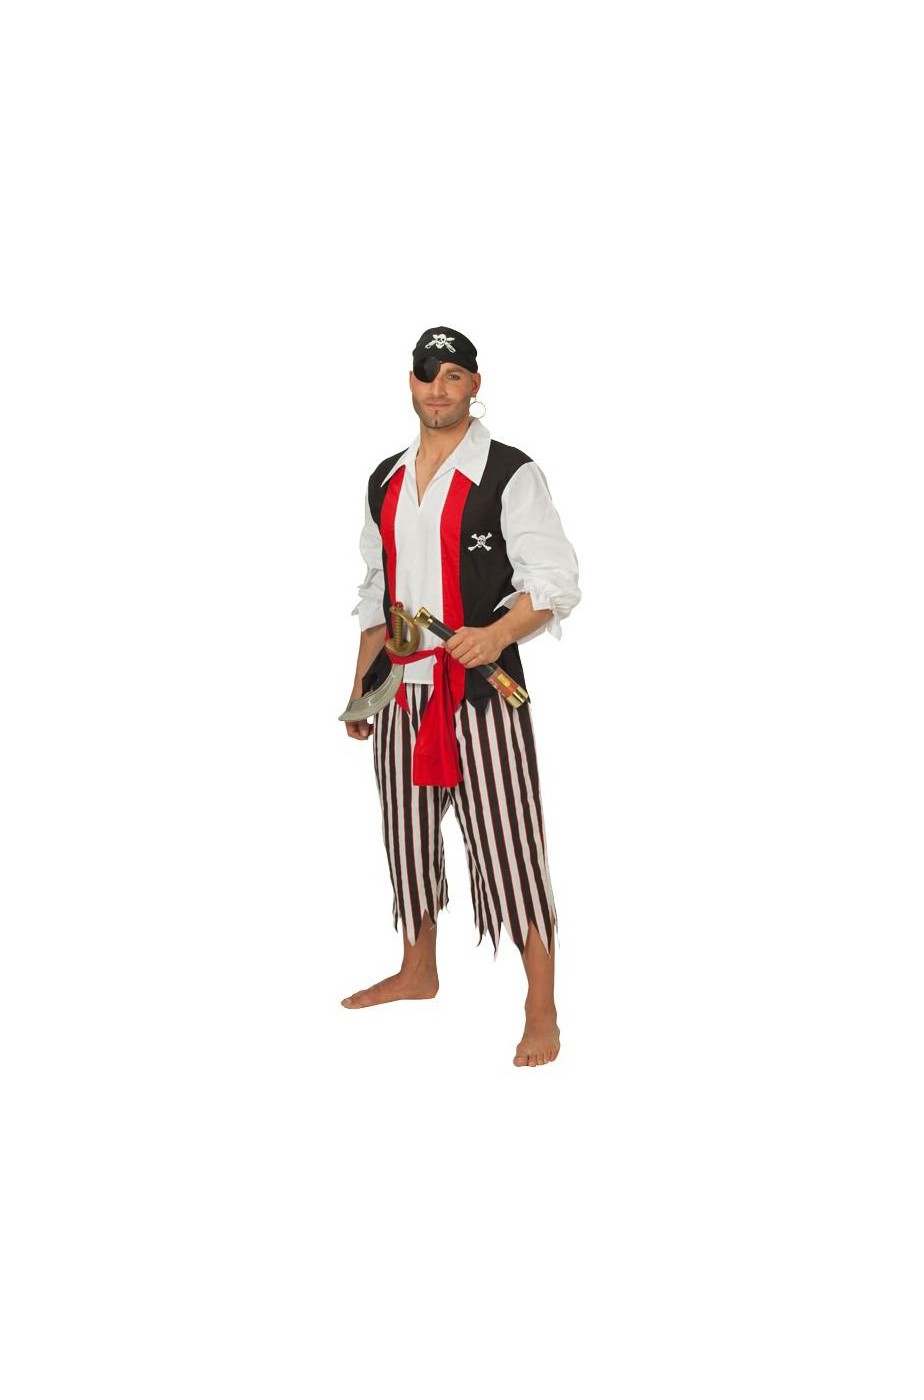 Vestito di carnevale da Pirata Uomo bucaniere